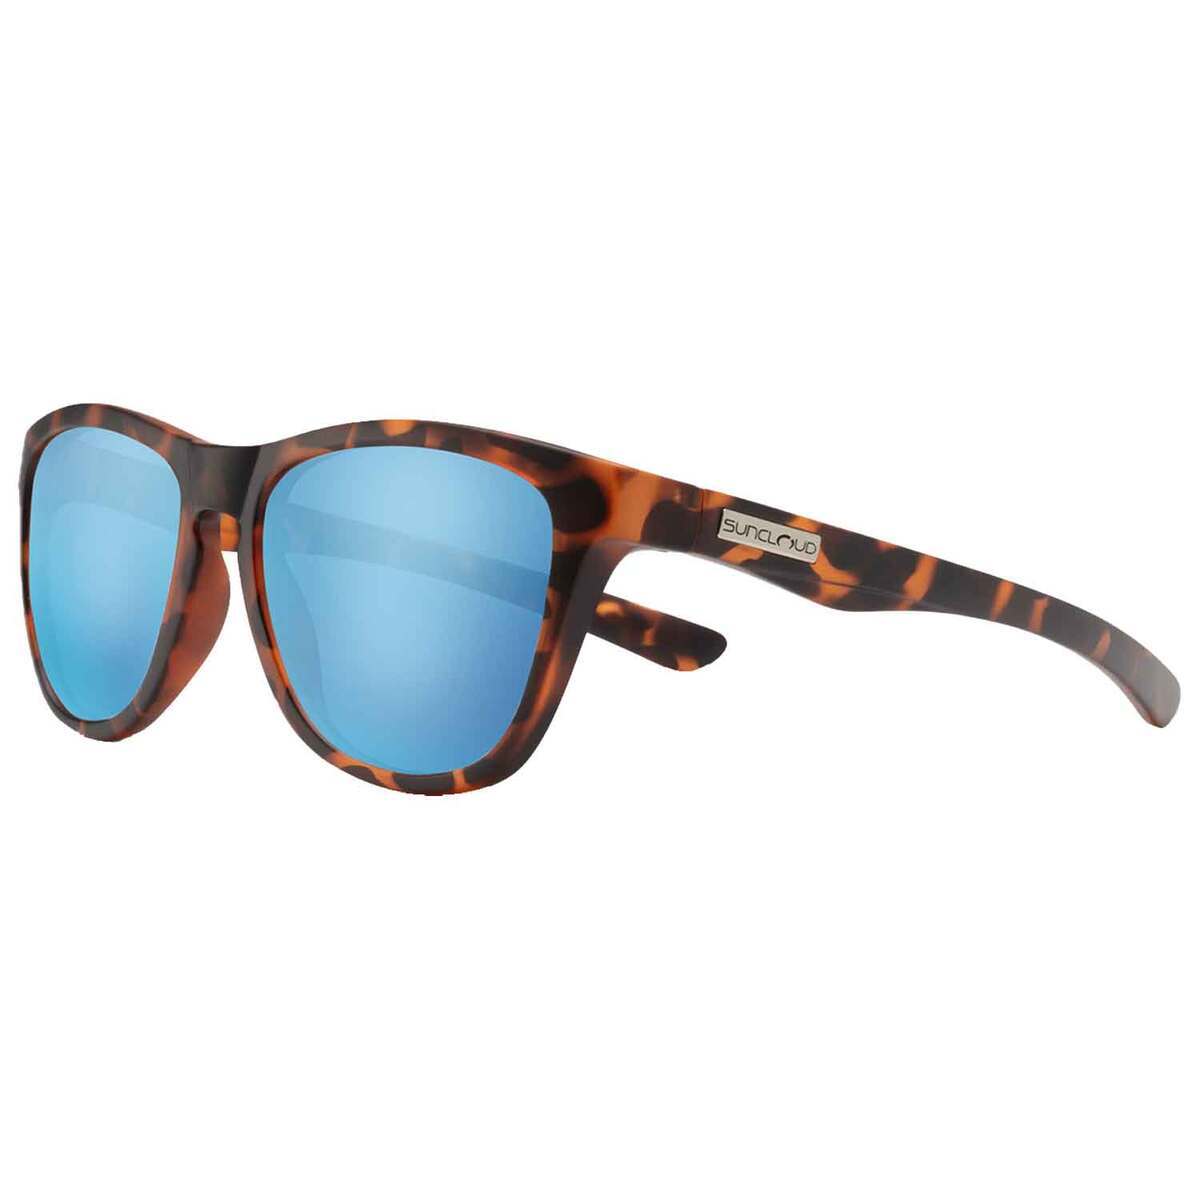 https://www.sportsmans.com/medias/suncloud-topsail-polarized-sunglasses-matte-tortoiseaqua-mirror-1871605-1.jpg?context=bWFzdGVyfGltYWdlc3wzMTE3MHxpbWFnZS9qcGVnfGFEVTNMMmcyWXk4eE1qQTBOakU0TkRBeU1qQTBOaTh4TWpBd0xXTnZiblpsY25OcGIyNUdiM0p0WVhSZlltRnpaUzFqYjI1MlpYSnphVzl1Um05eWJXRjBYM050ZHkweE9EY3hOakExTFRFdWFuQm58OGM2Mzk3NDgyNDBmZjNhYTEzZThmZmMyMmEyMDBkN2JiNTczM2U0YTYxMTM1ODVmZTFjNmM1ZjE1YzMxOThhMQ